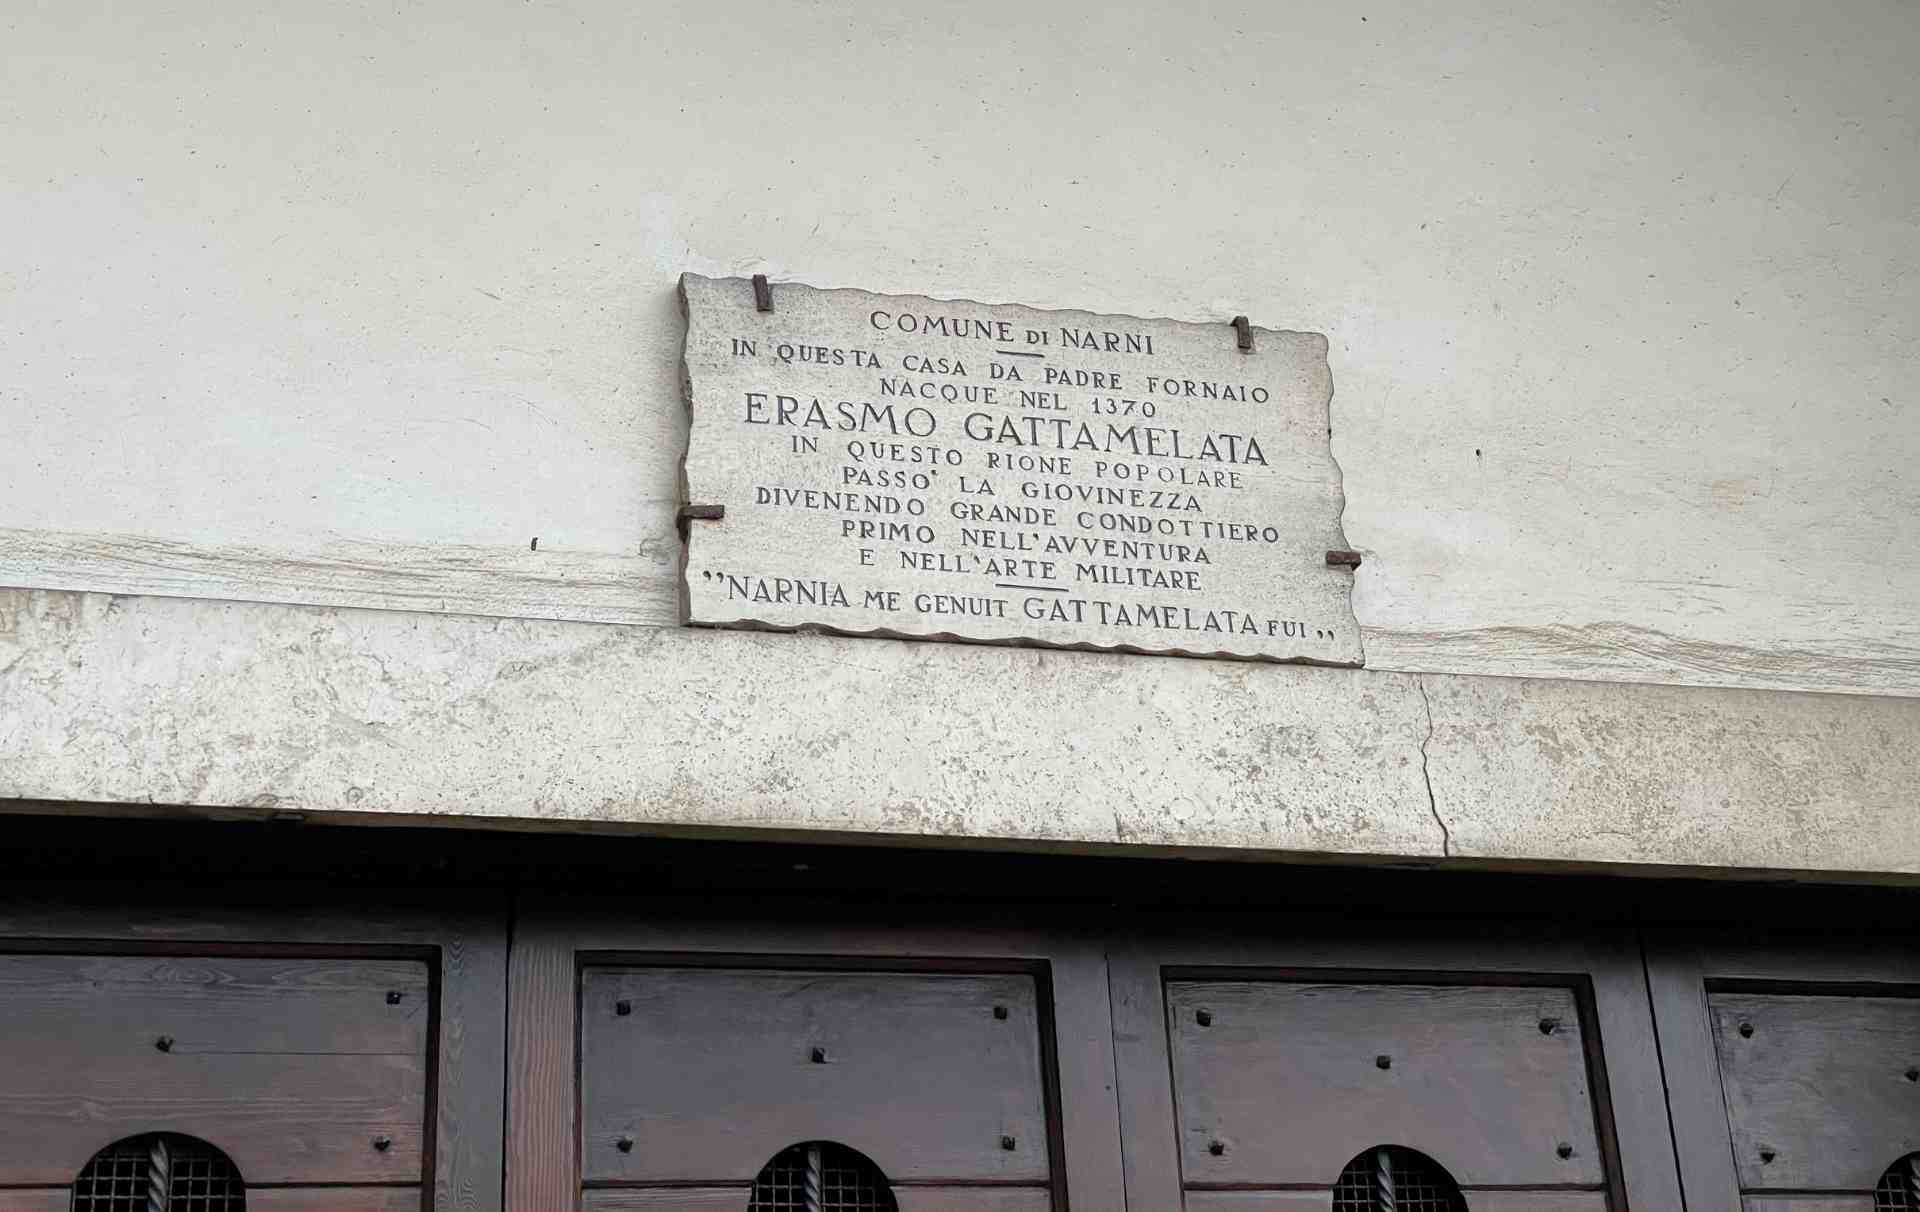 Iscrizione sul portale d'accesso della casa natale di Erasmo il Gattamelata da Narni